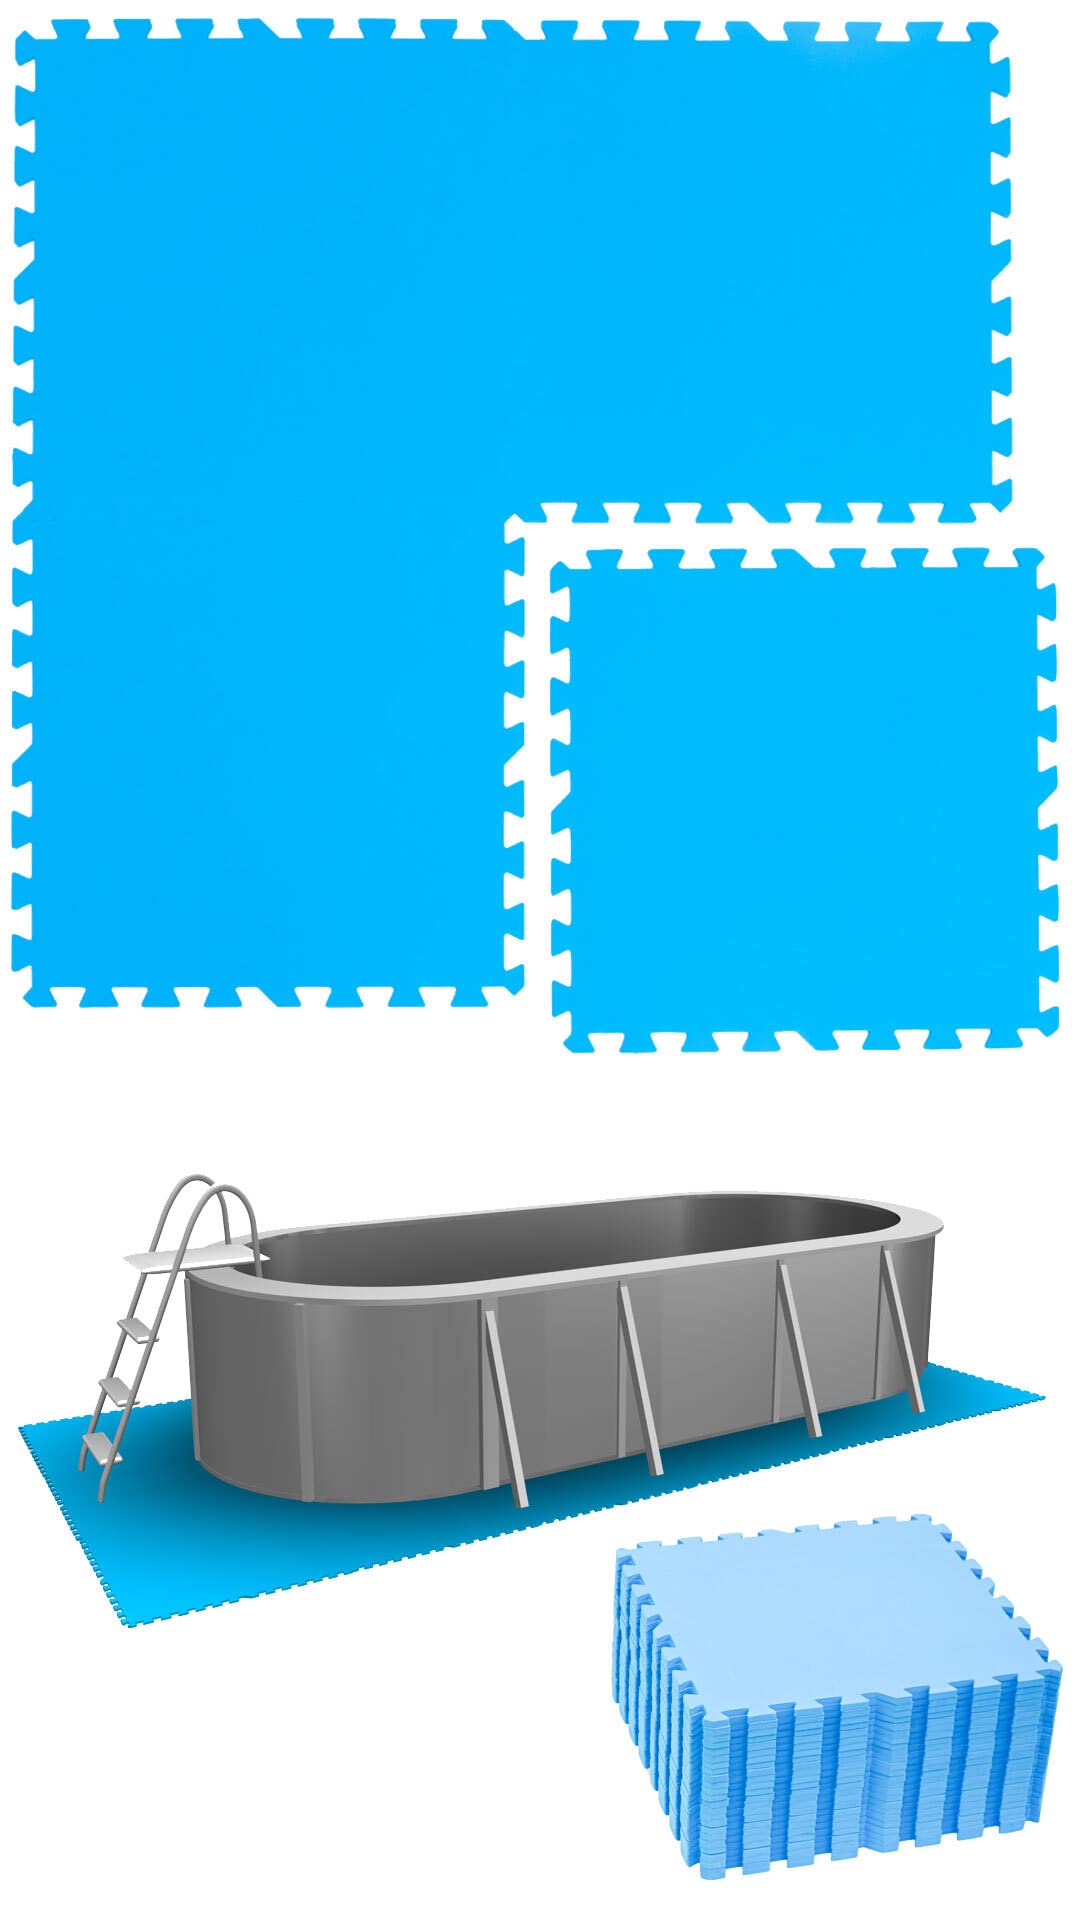 EYEPOWER 5,6m² Poolunterlage aus 24 großen Matten - 50 x 50 x 1cm Dicke Poolmatte - Pool Unterlage Outdoor Matte Poolunterlage 1cm Platten für Pool Boden Poolmatte Poolmatten Schutzboden 50x50